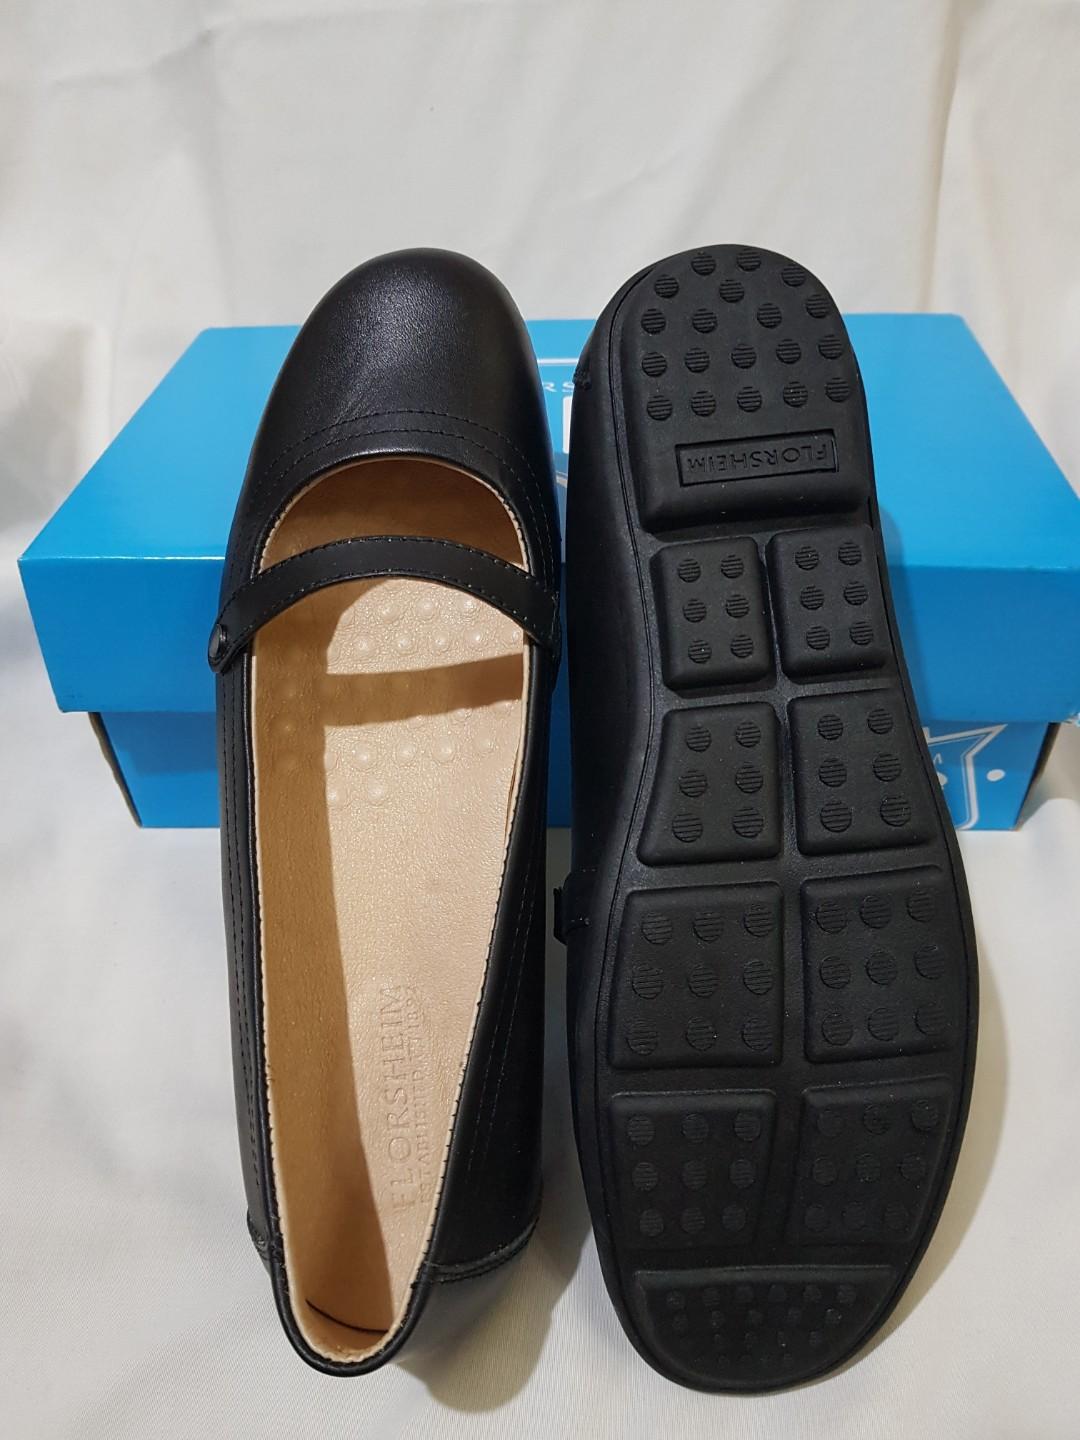 back to school shoe sale 2019